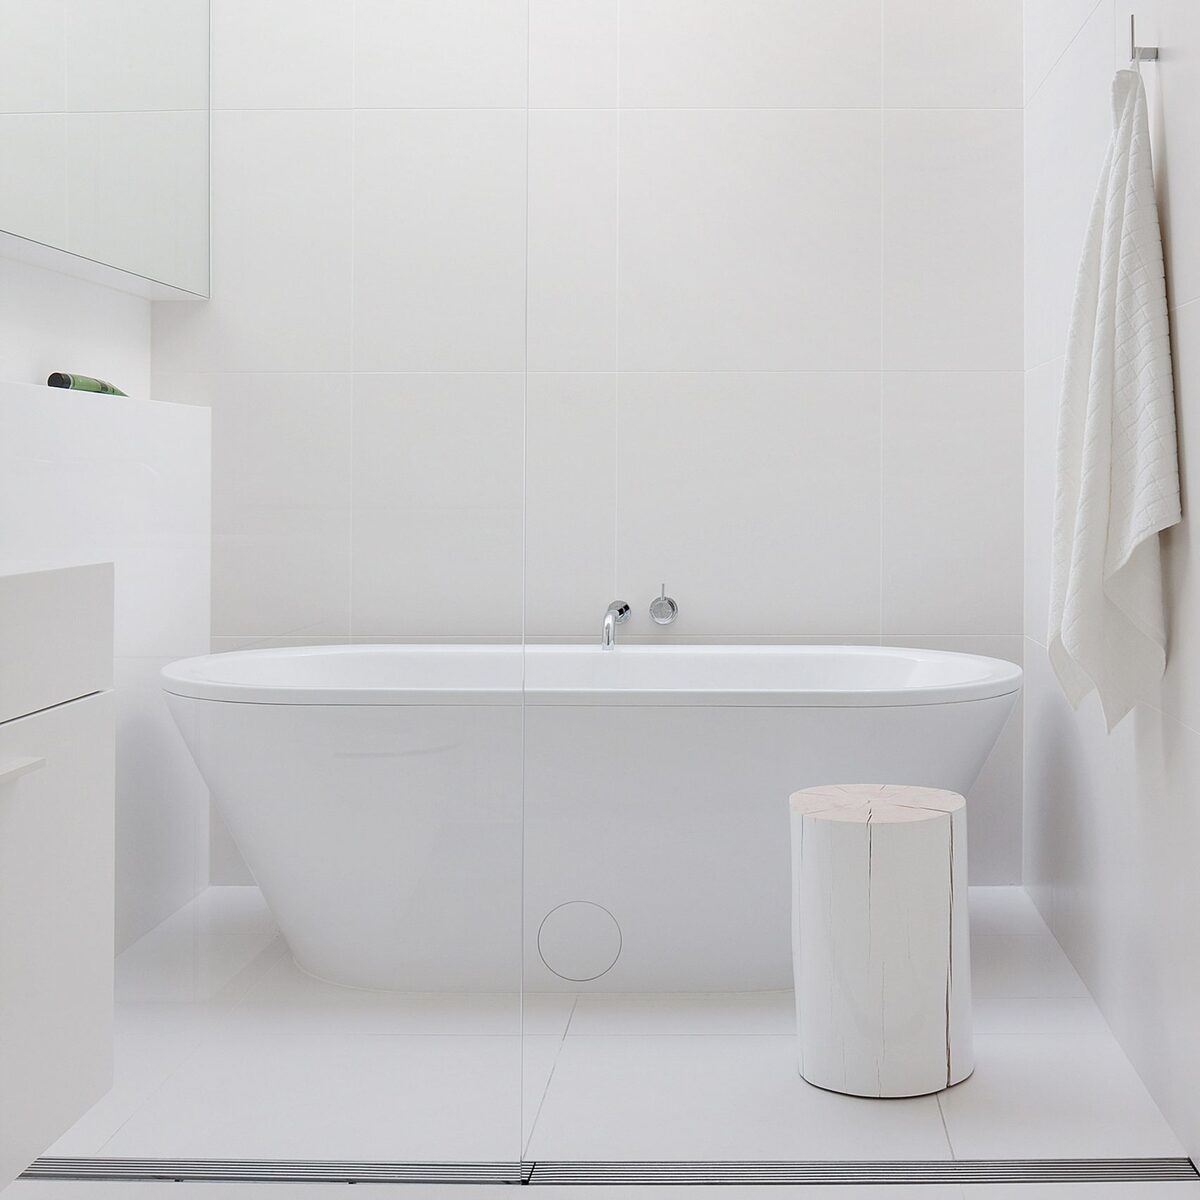 10 mẫu nhà tắm đẹp theo phong cách tối giản